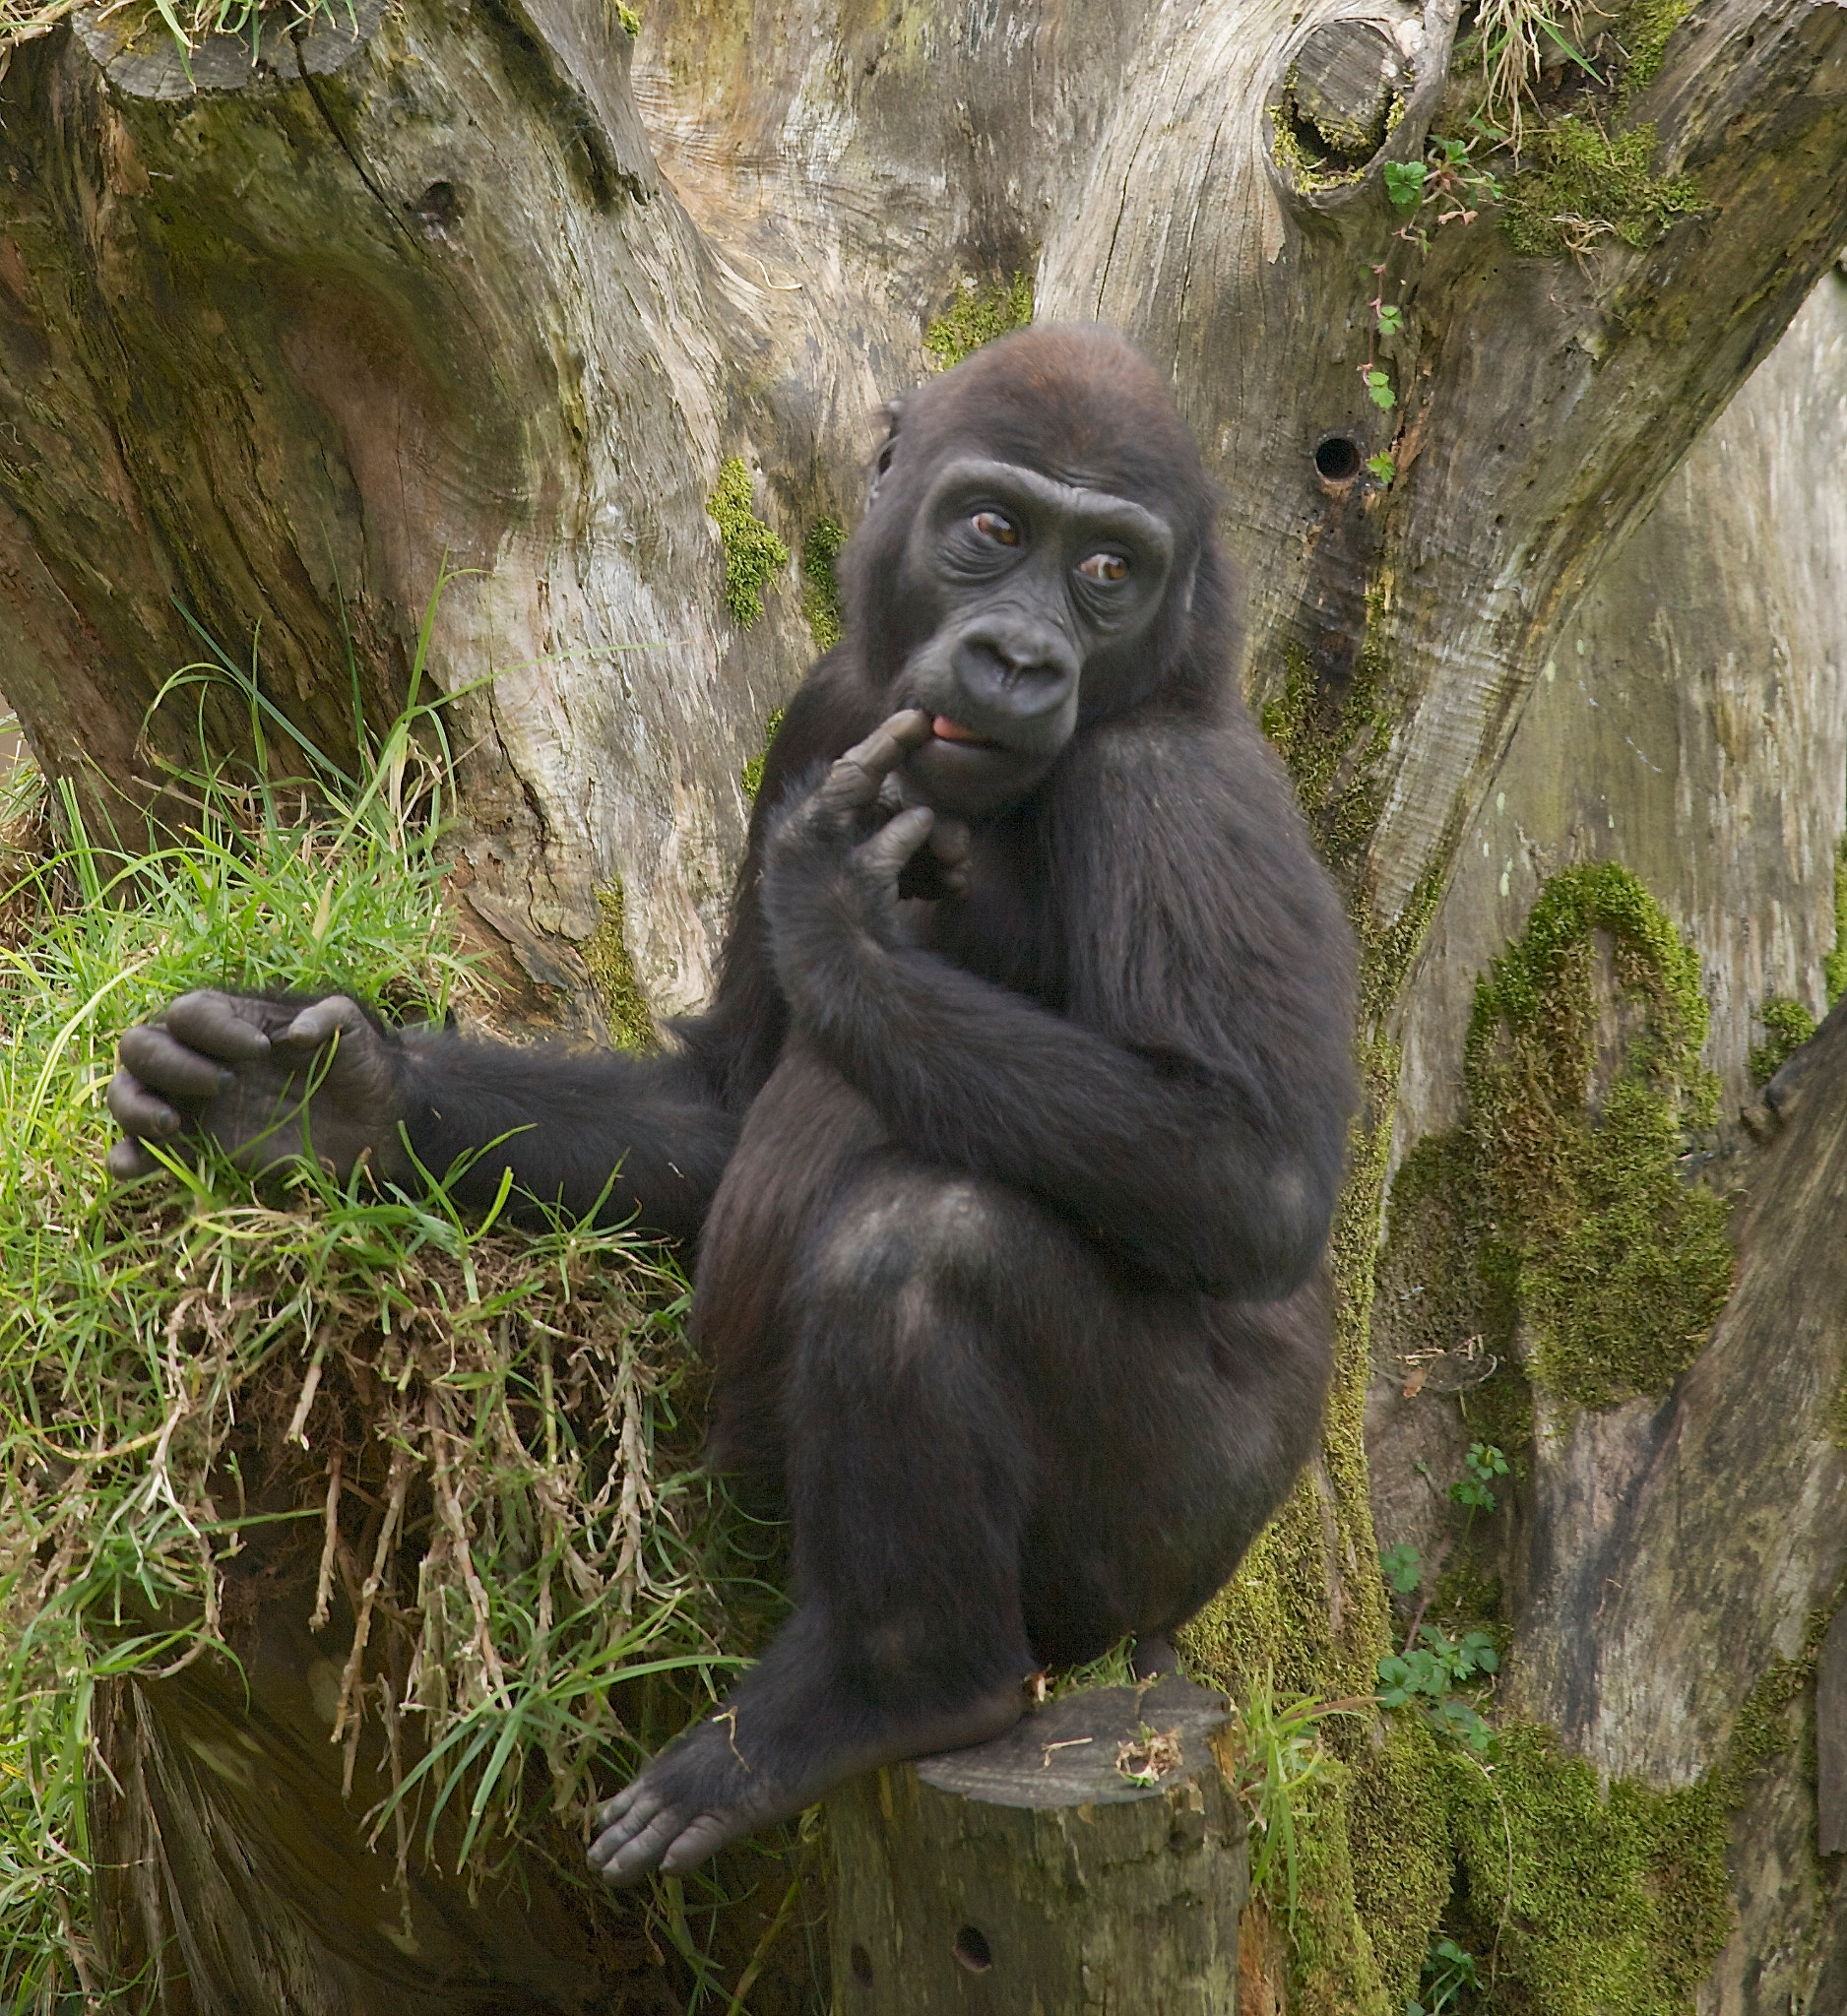 Canon EOS 5D sample photo. Shy baby gorilla photography